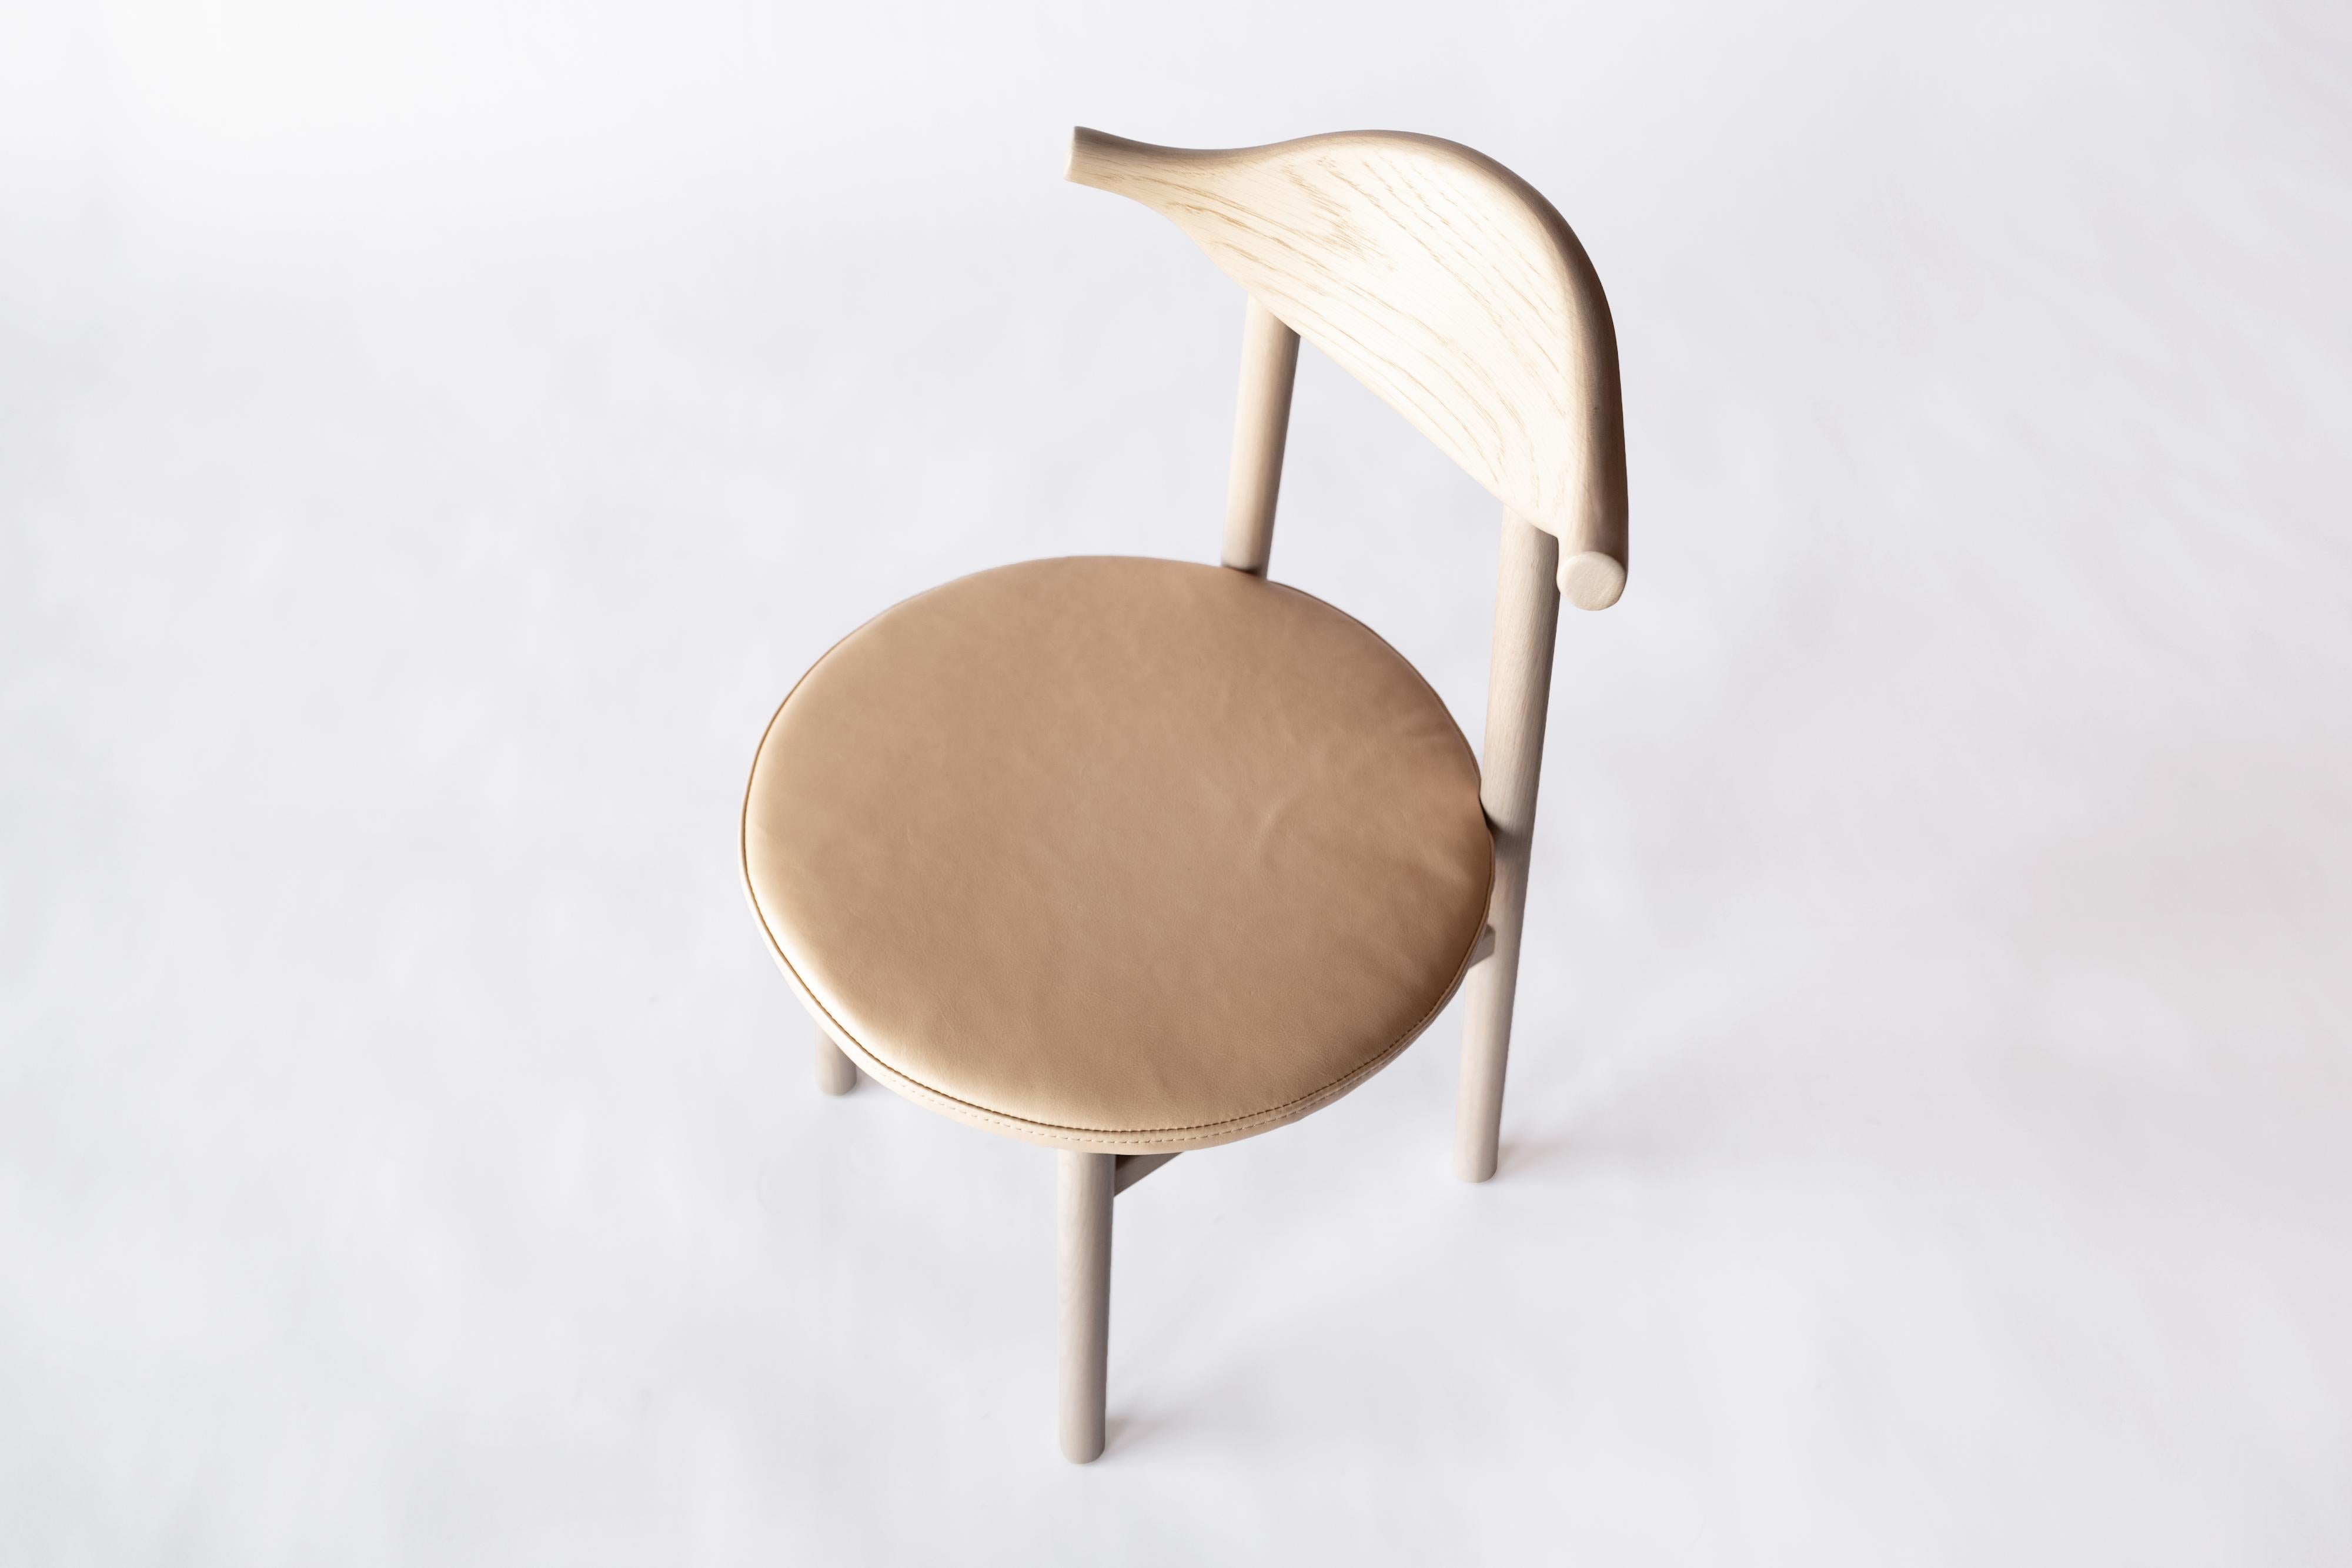 Sun at Six est un studio de design de meubles contemporains qui travaille avec des maîtres menuisiers chinois traditionnels pour fabriquer ses pièces à la main en utilisant la menuiserie traditionnelle. La chaise Ember est un siège polyvalent